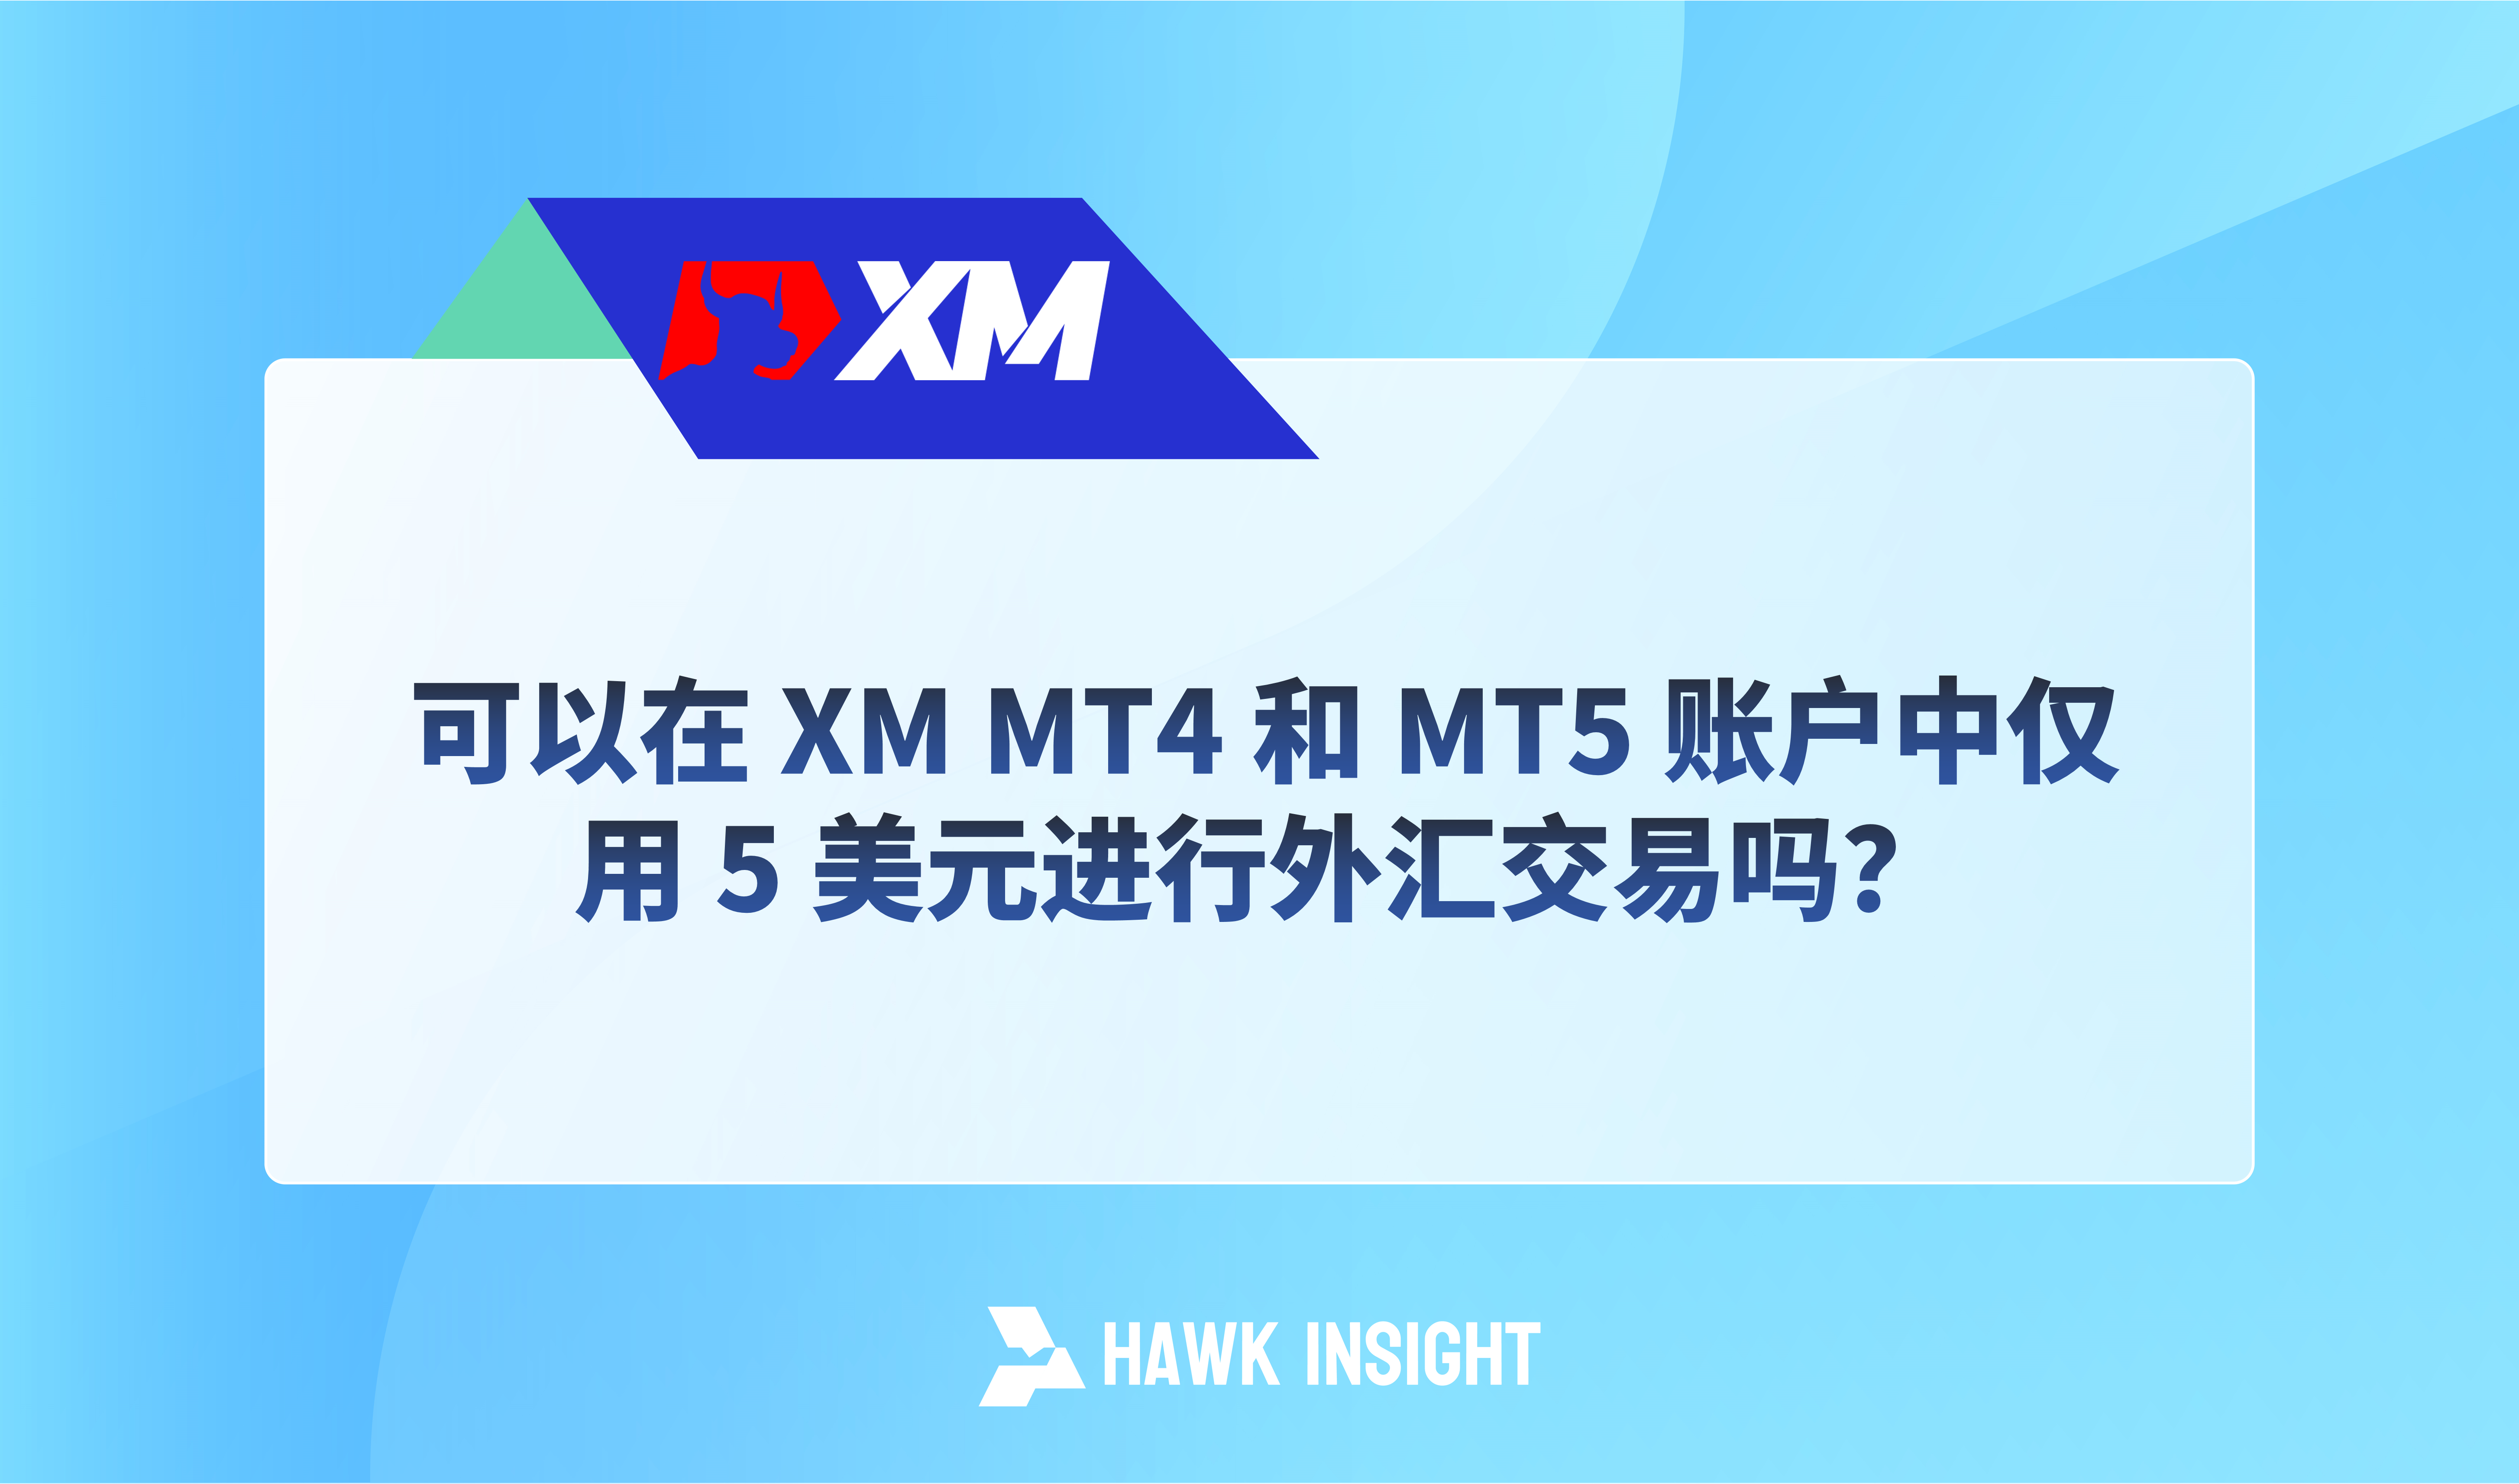 可以在 XM MT4 和 MT5 账户中仅用 5 美元进行外汇交易吗？